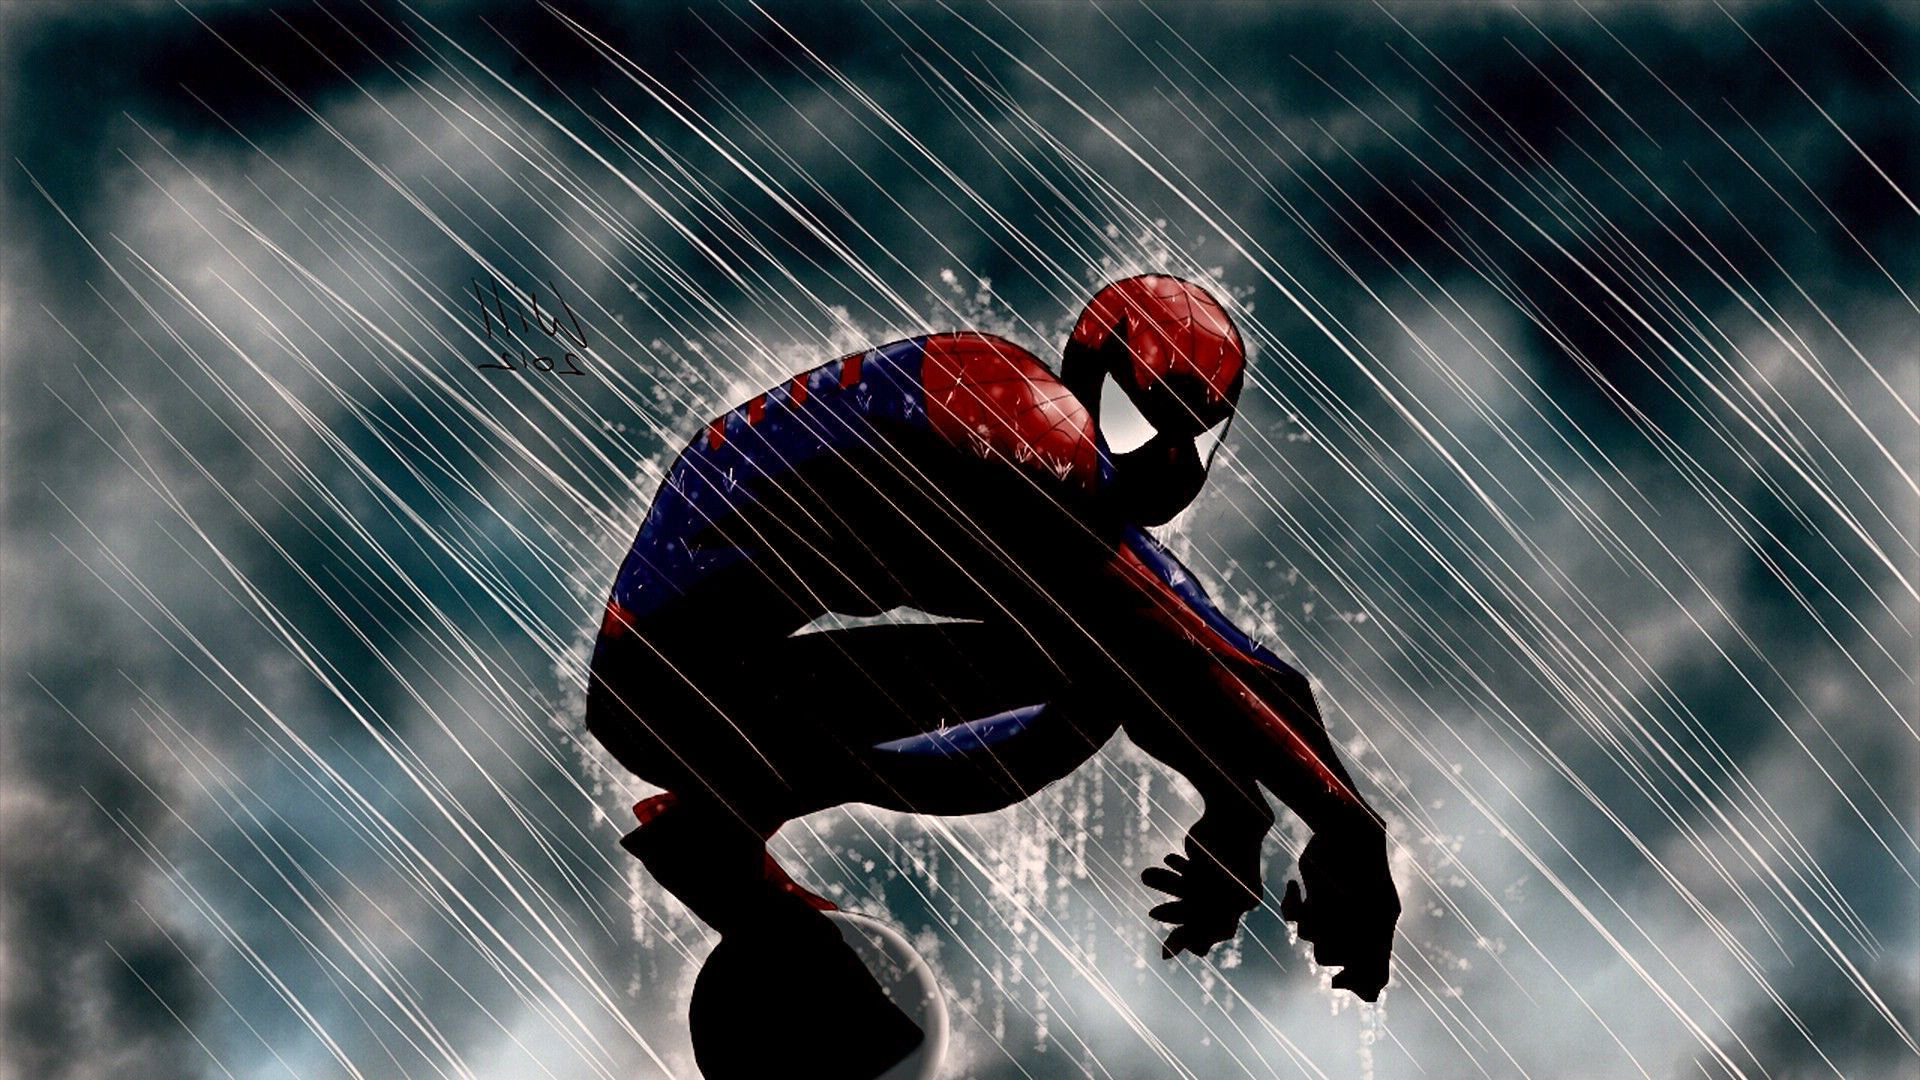 spiderman fondo de pantalla hd 1920x1080,hombre araña,agua,personaje de ficción,superhéroe,deporte extremo